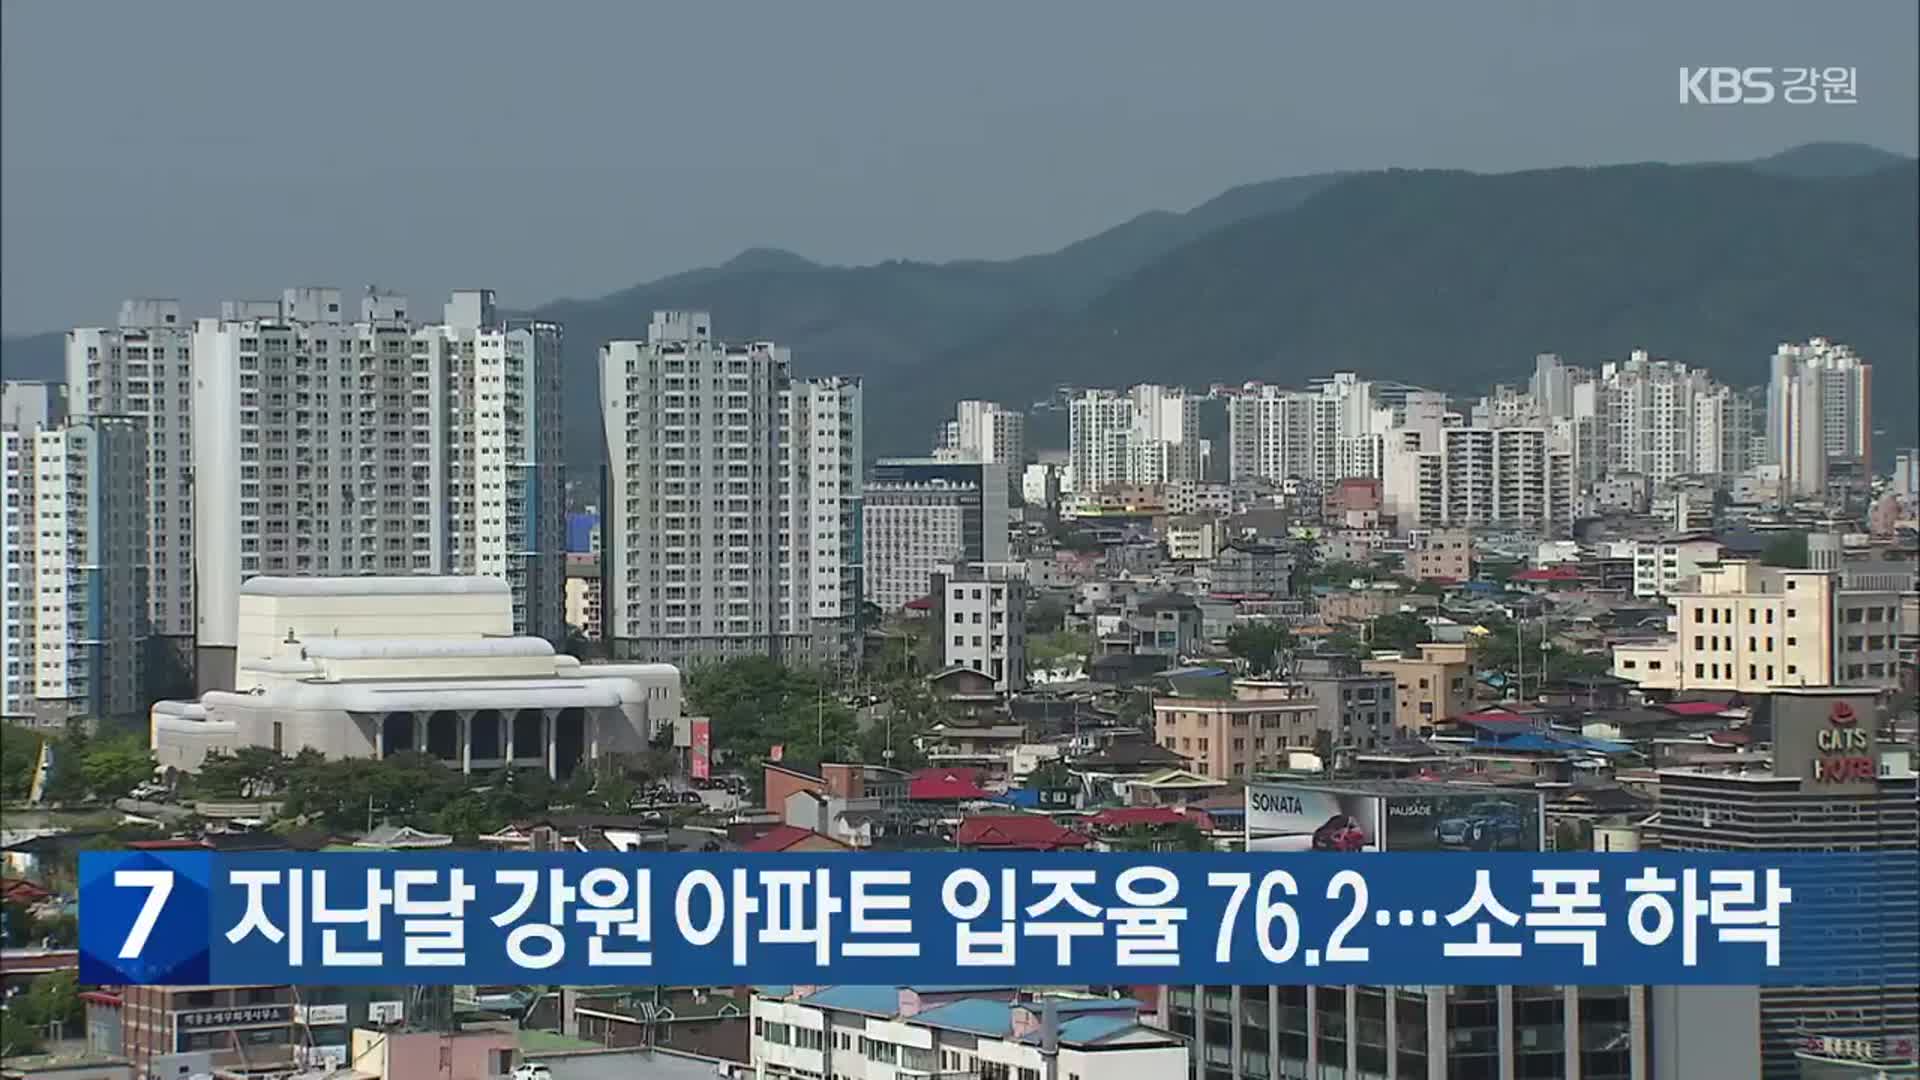 지난달 강원 아파트 입주율 76.2…소폭 하락